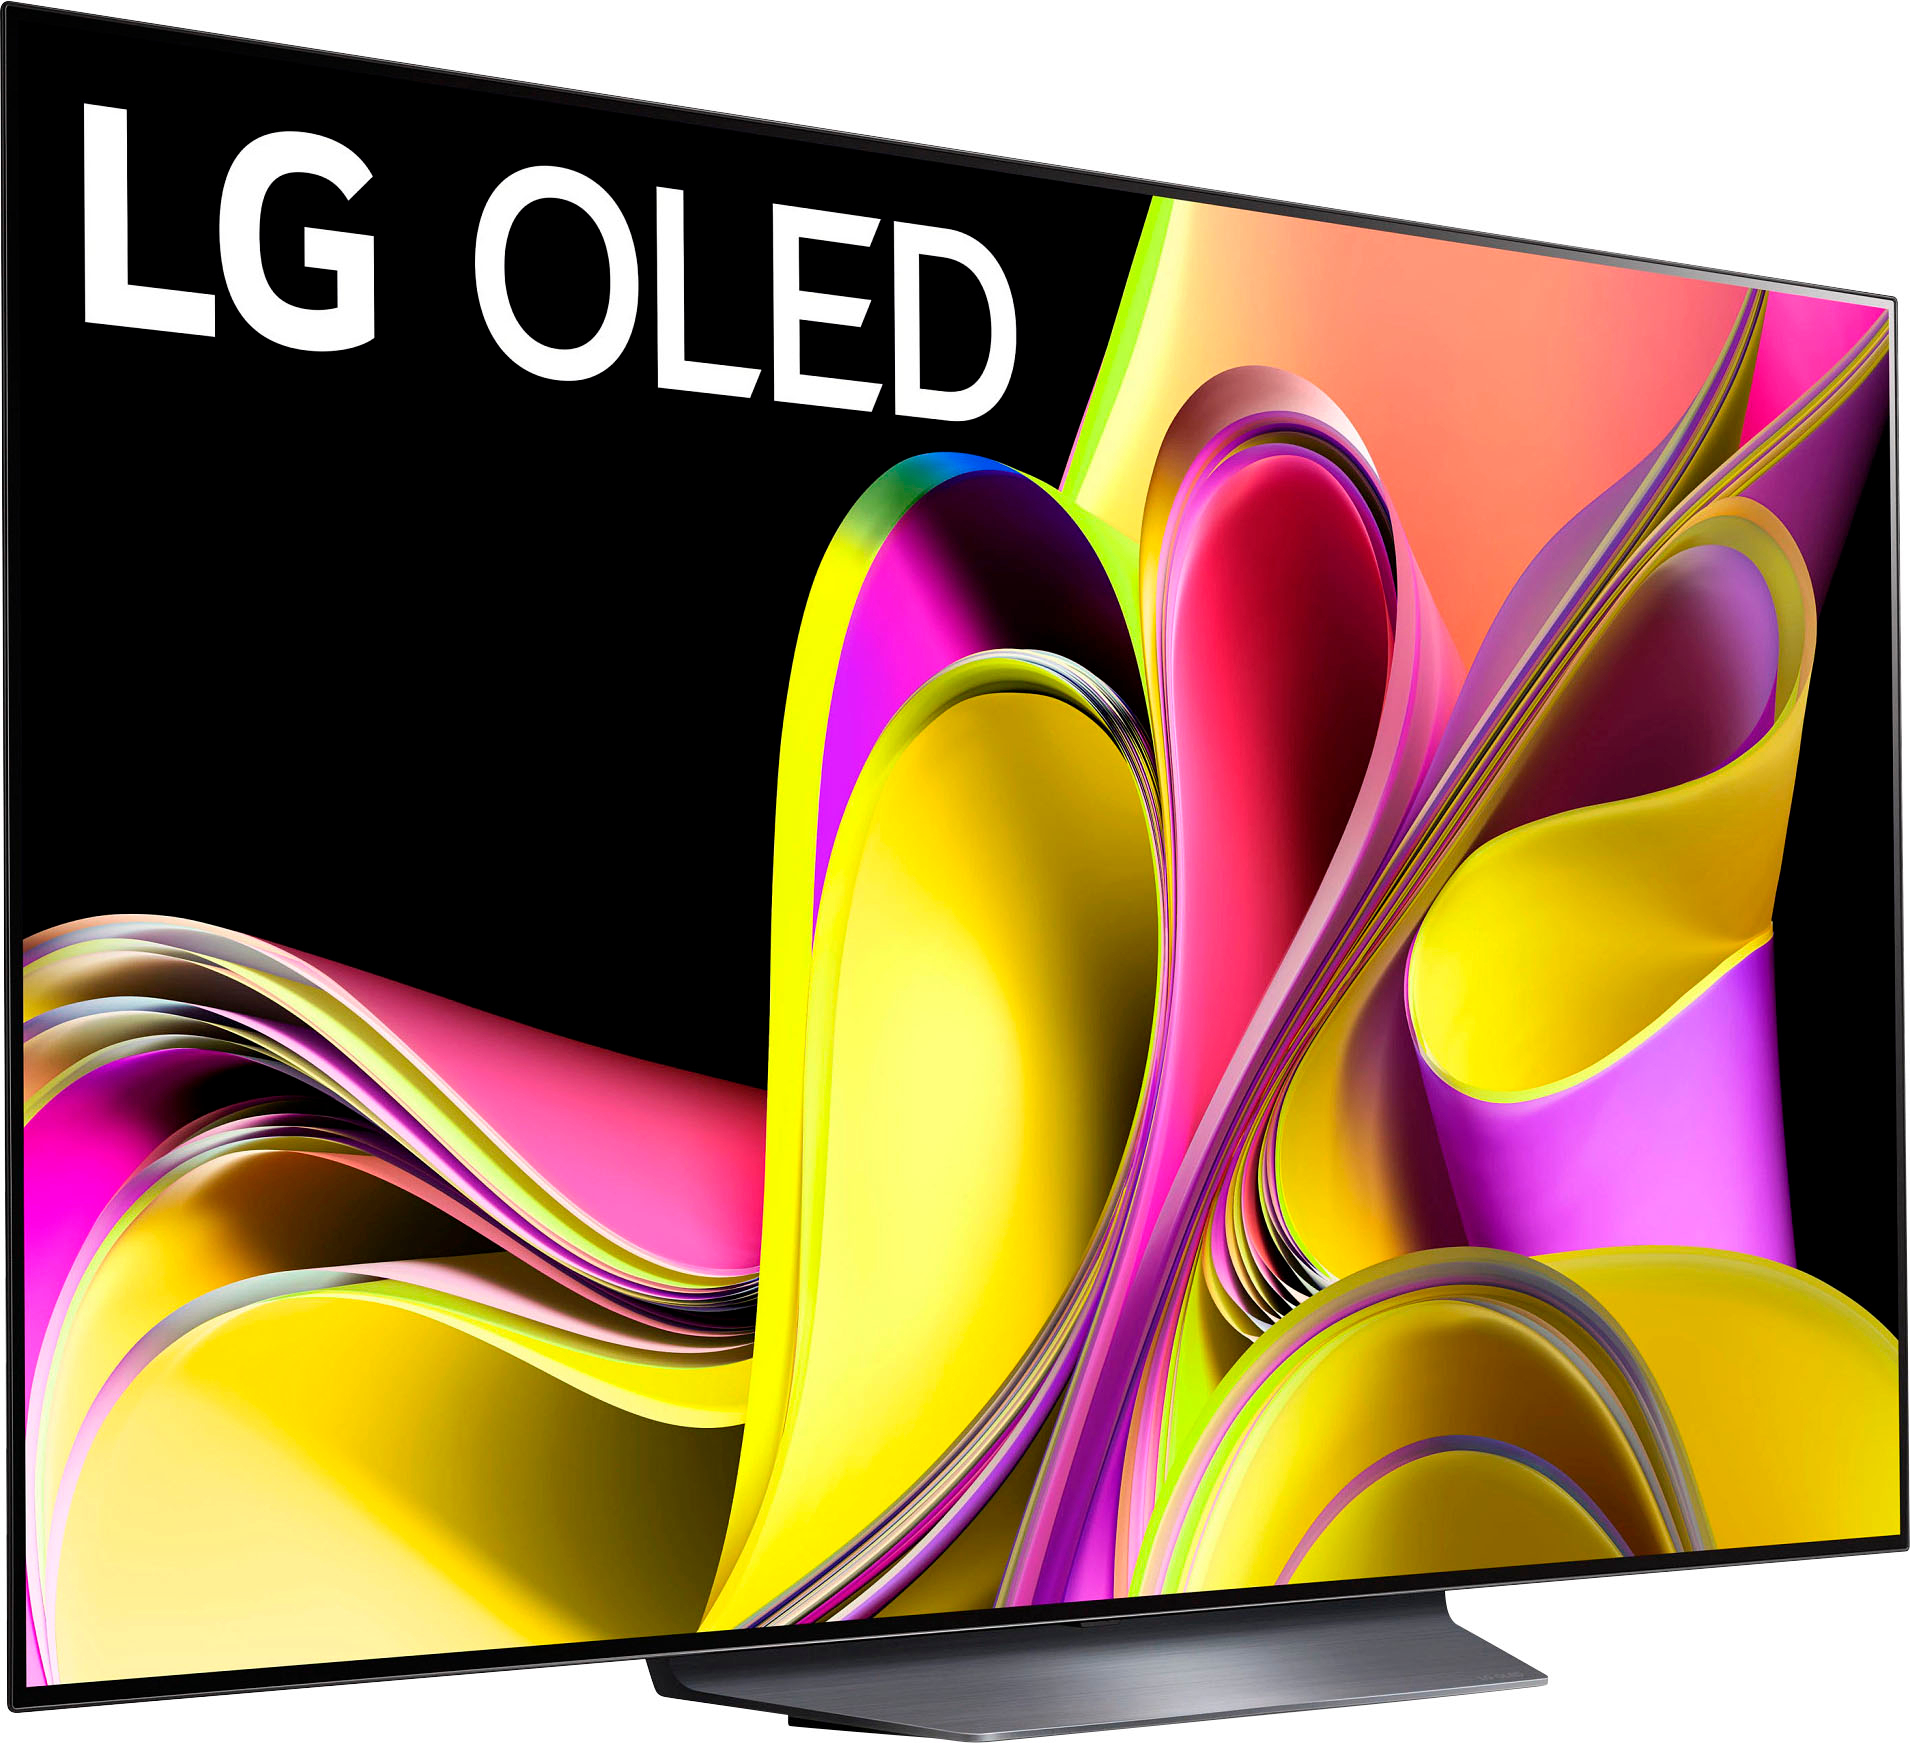 LG 42 OLED ThinQ SMART TV